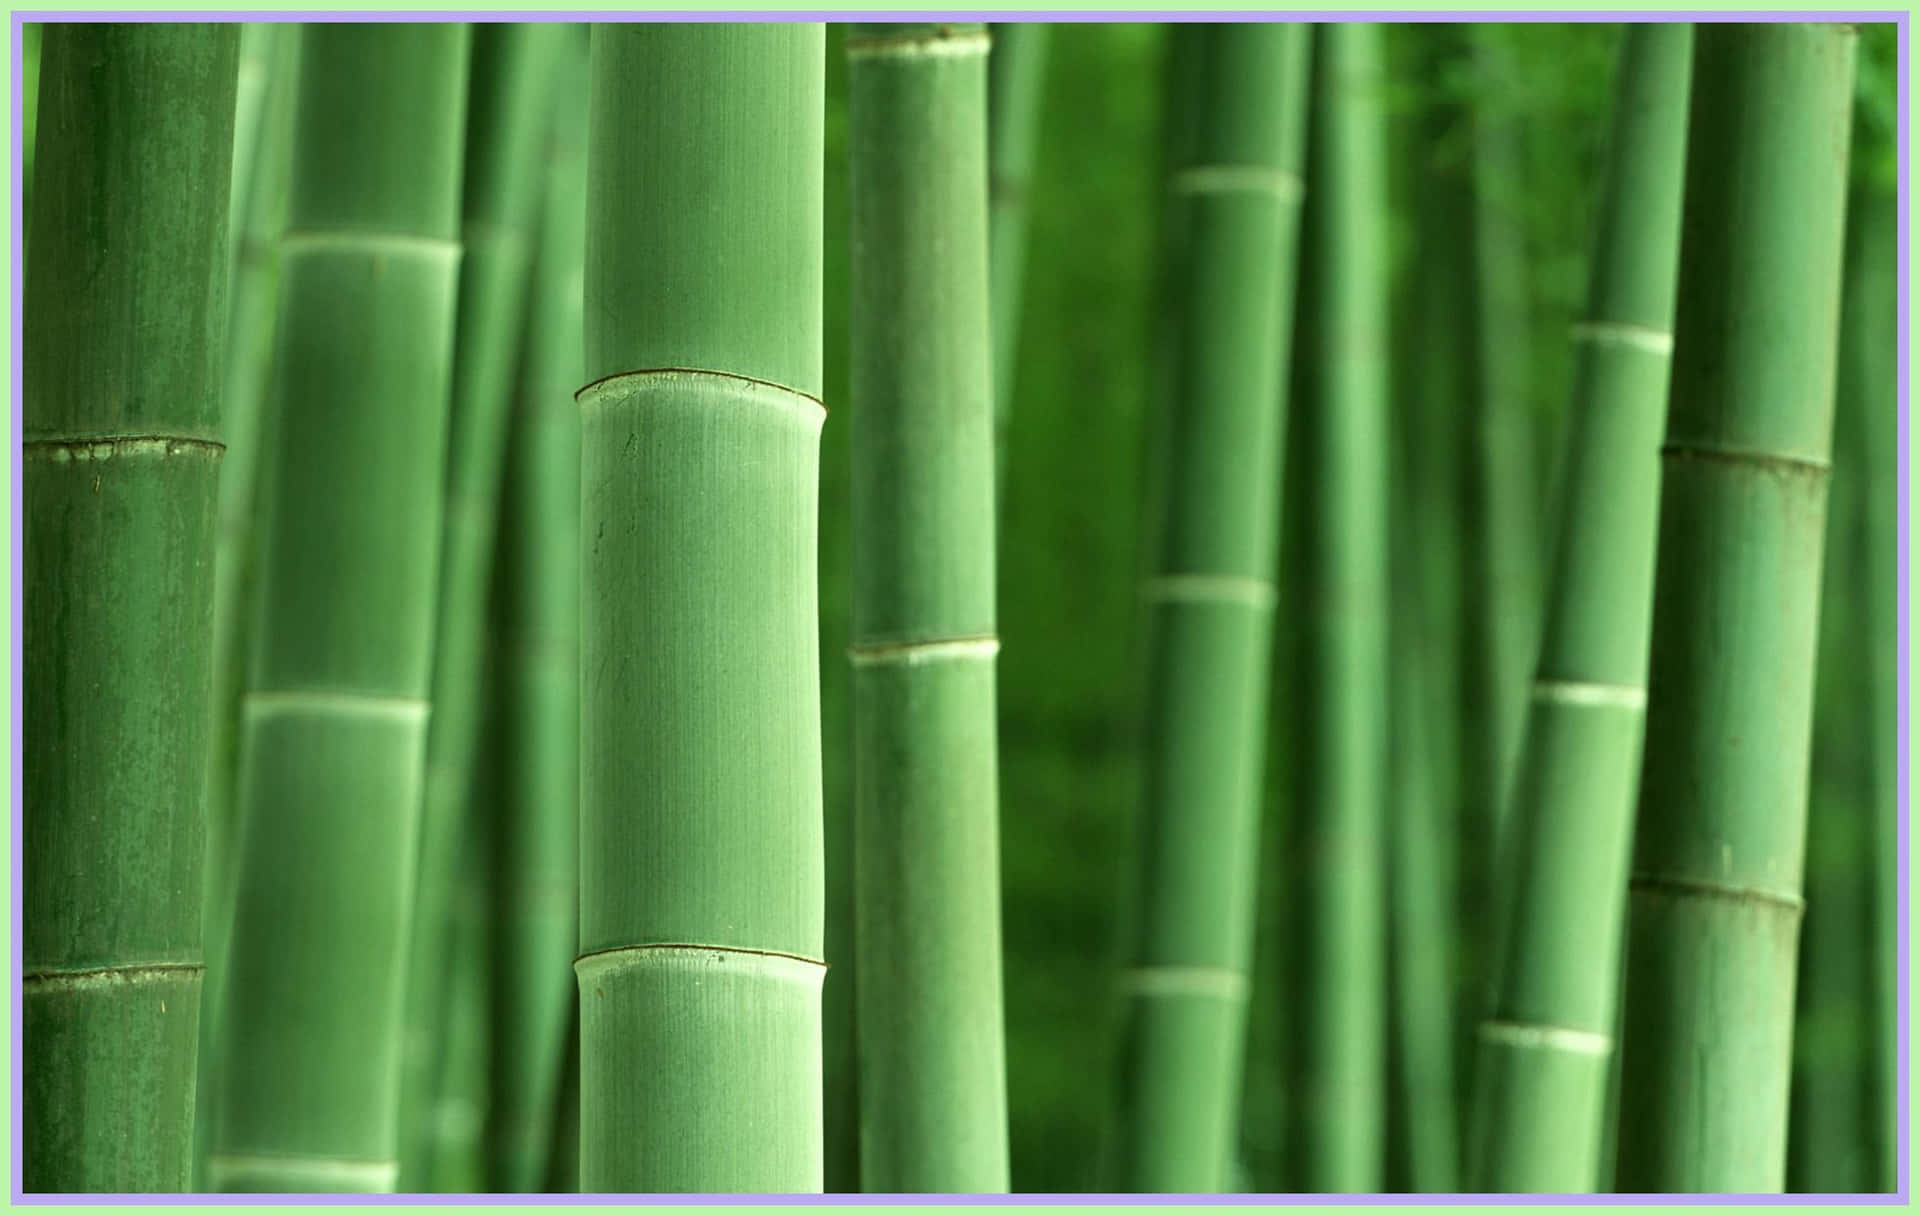 Et højt og majestætisk stængel af grøn bambus. Wallpaper